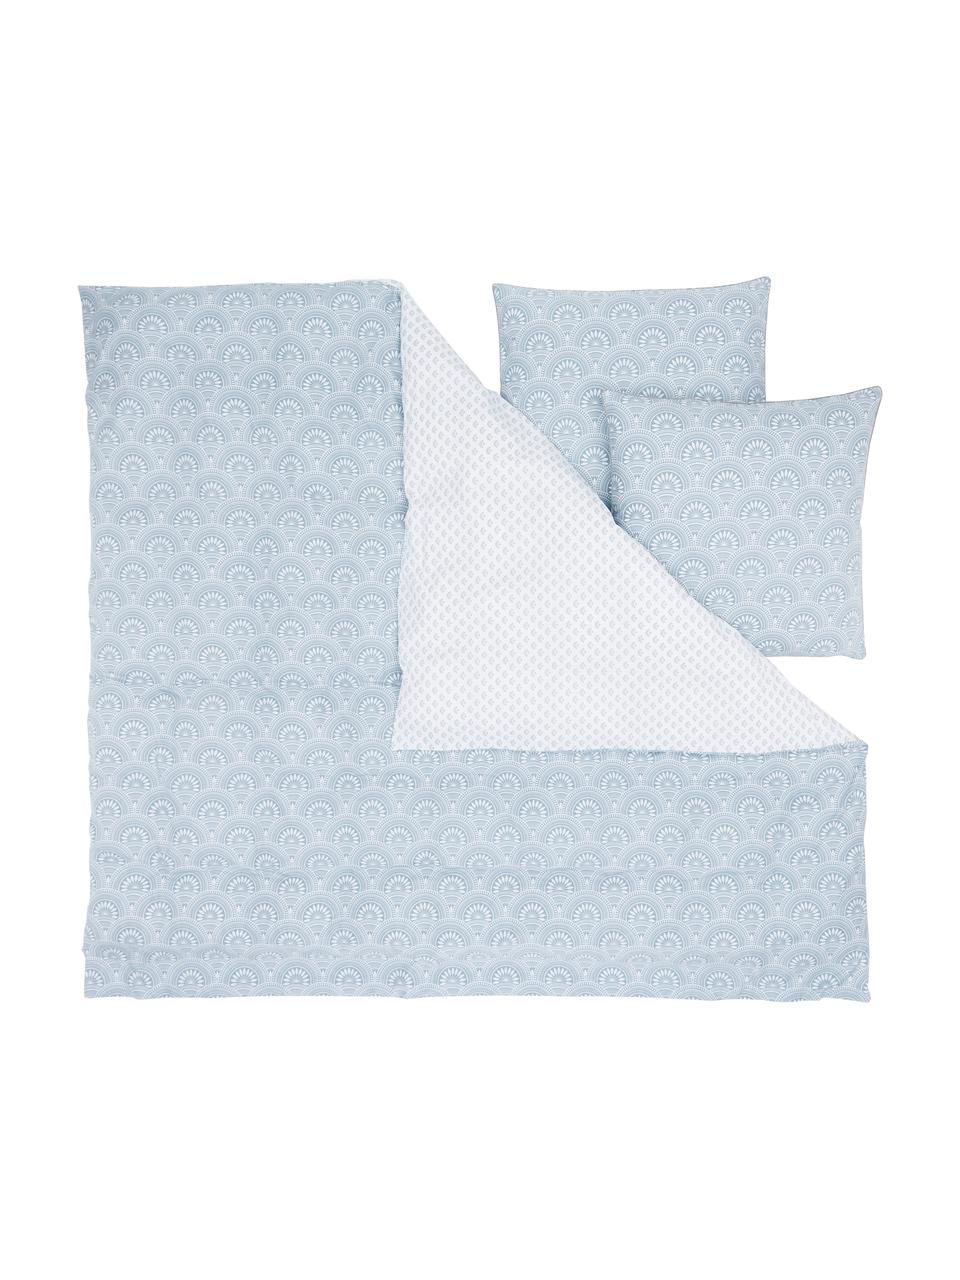 Vzorované oboustranné povlečení z organické bavlny Tiara, Modrá, bílá, 240 x 220 cm + 2 polštáře 80 x 80 cm